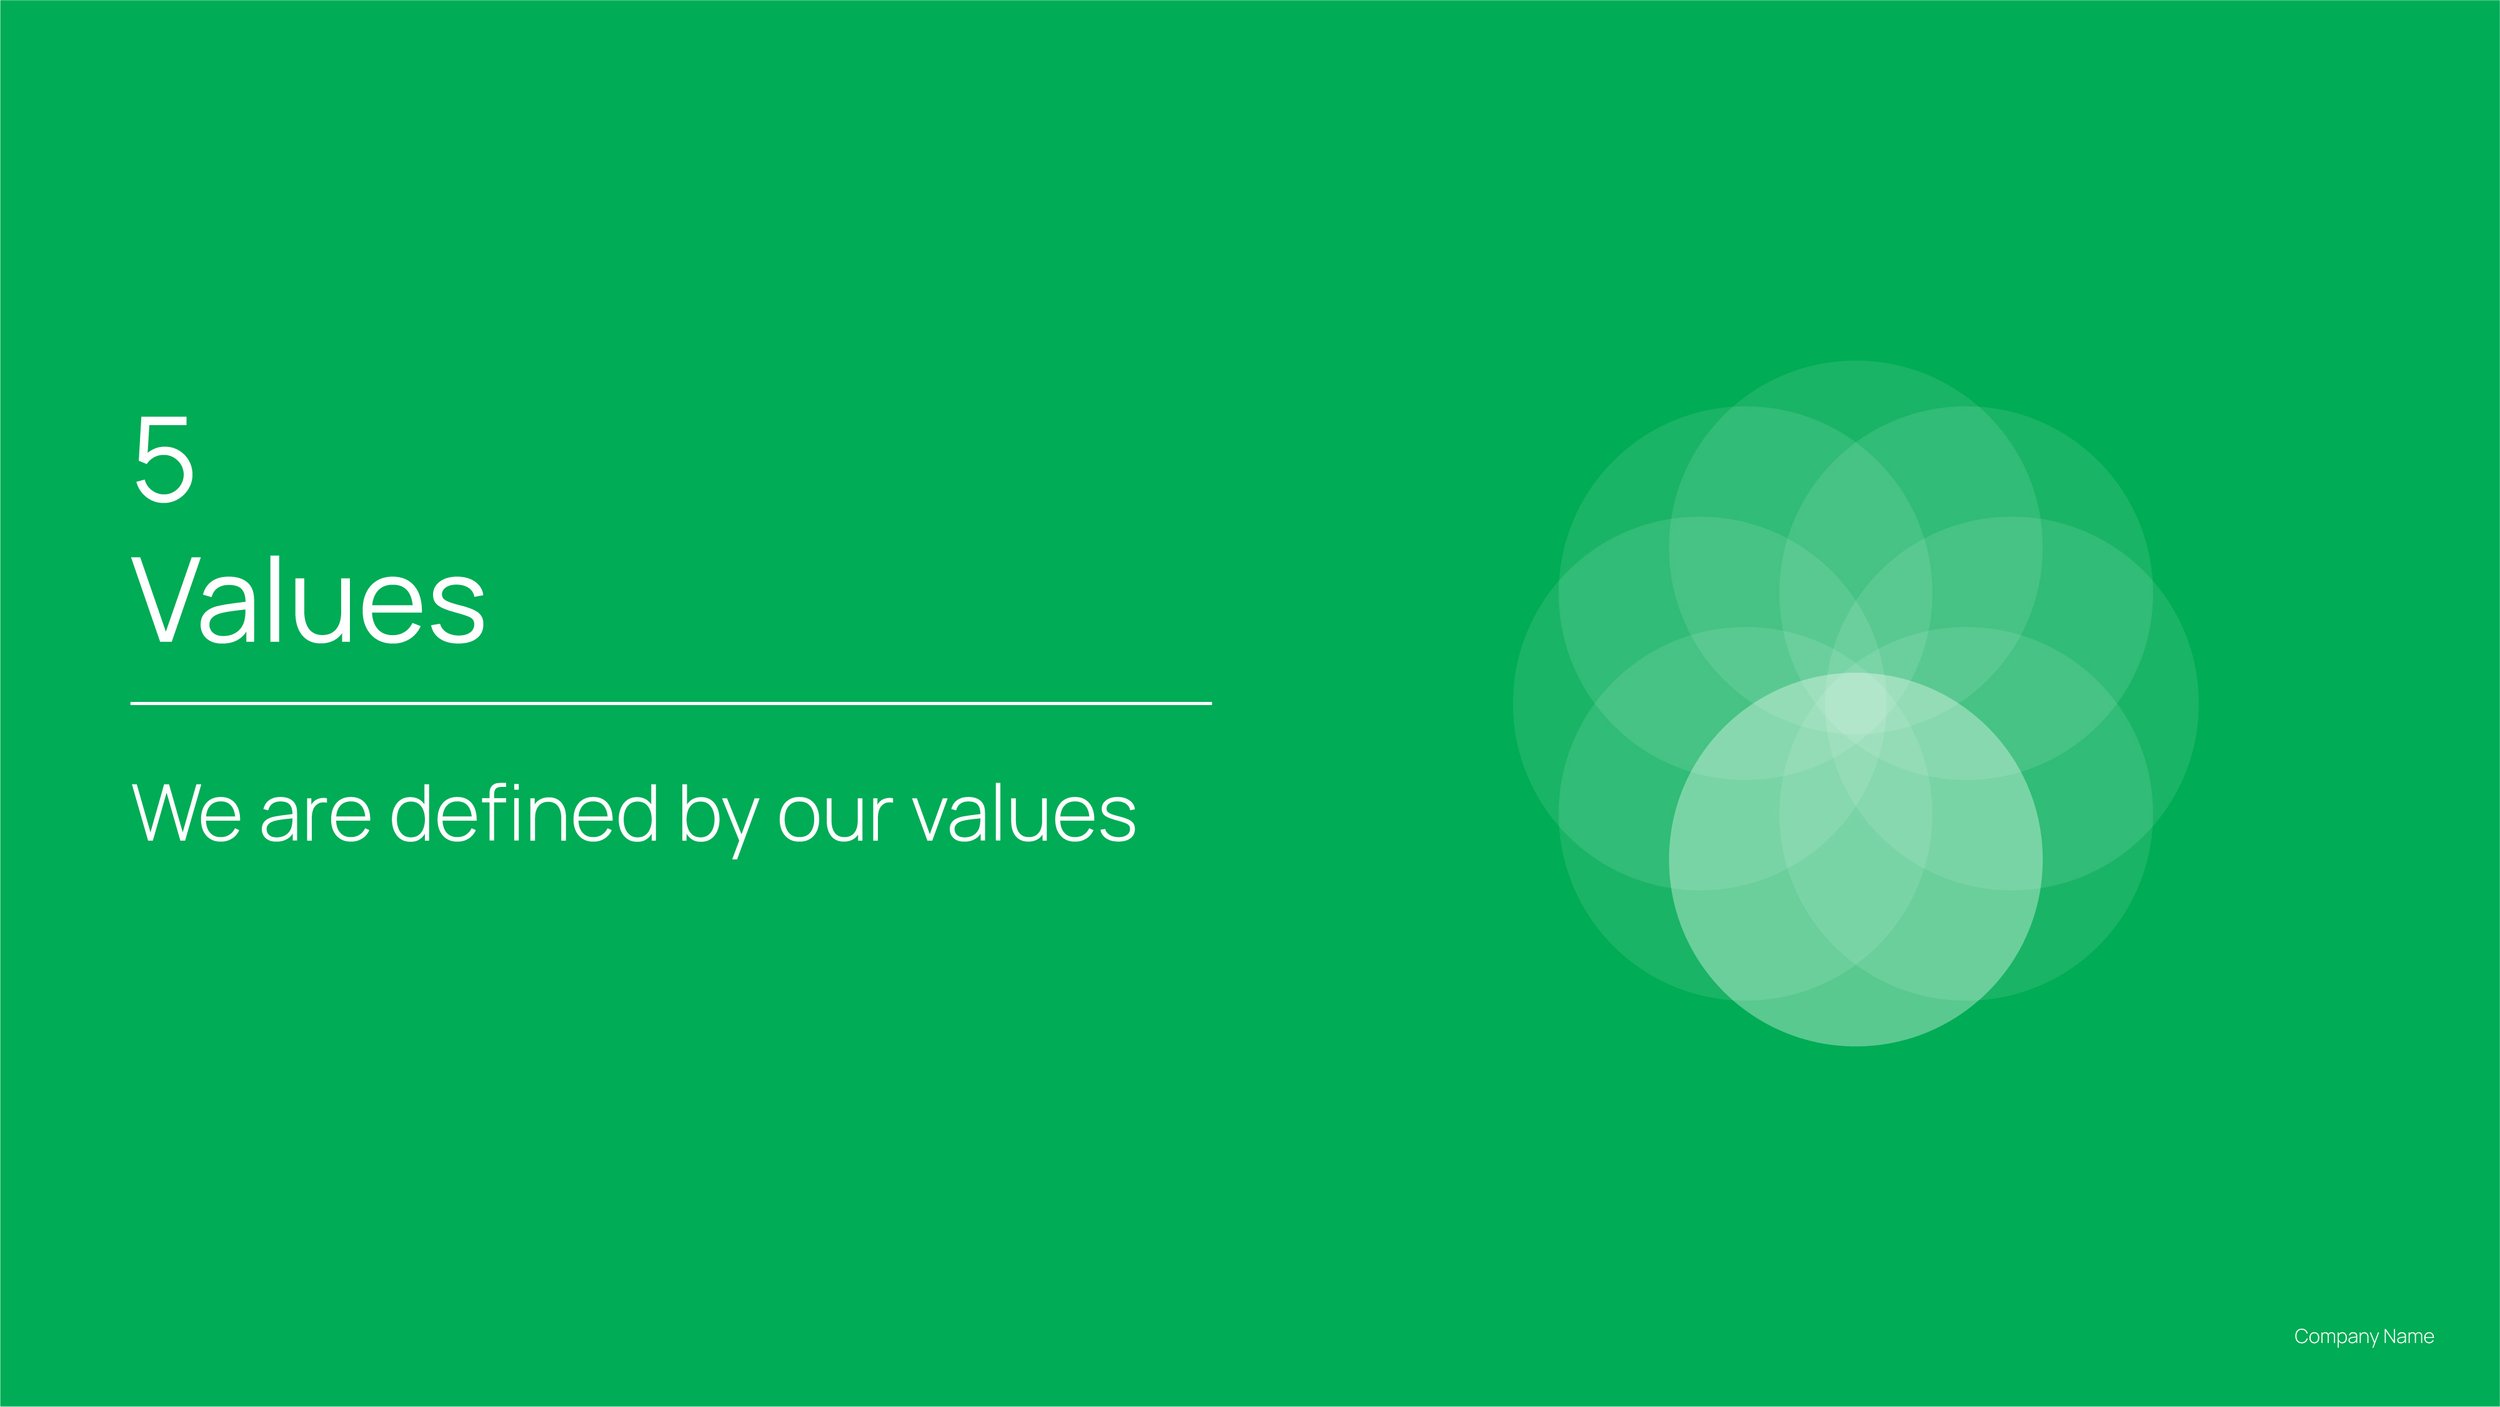 The-Comprehensive-Brand-Strategy_v1.0_5. Values.jpg